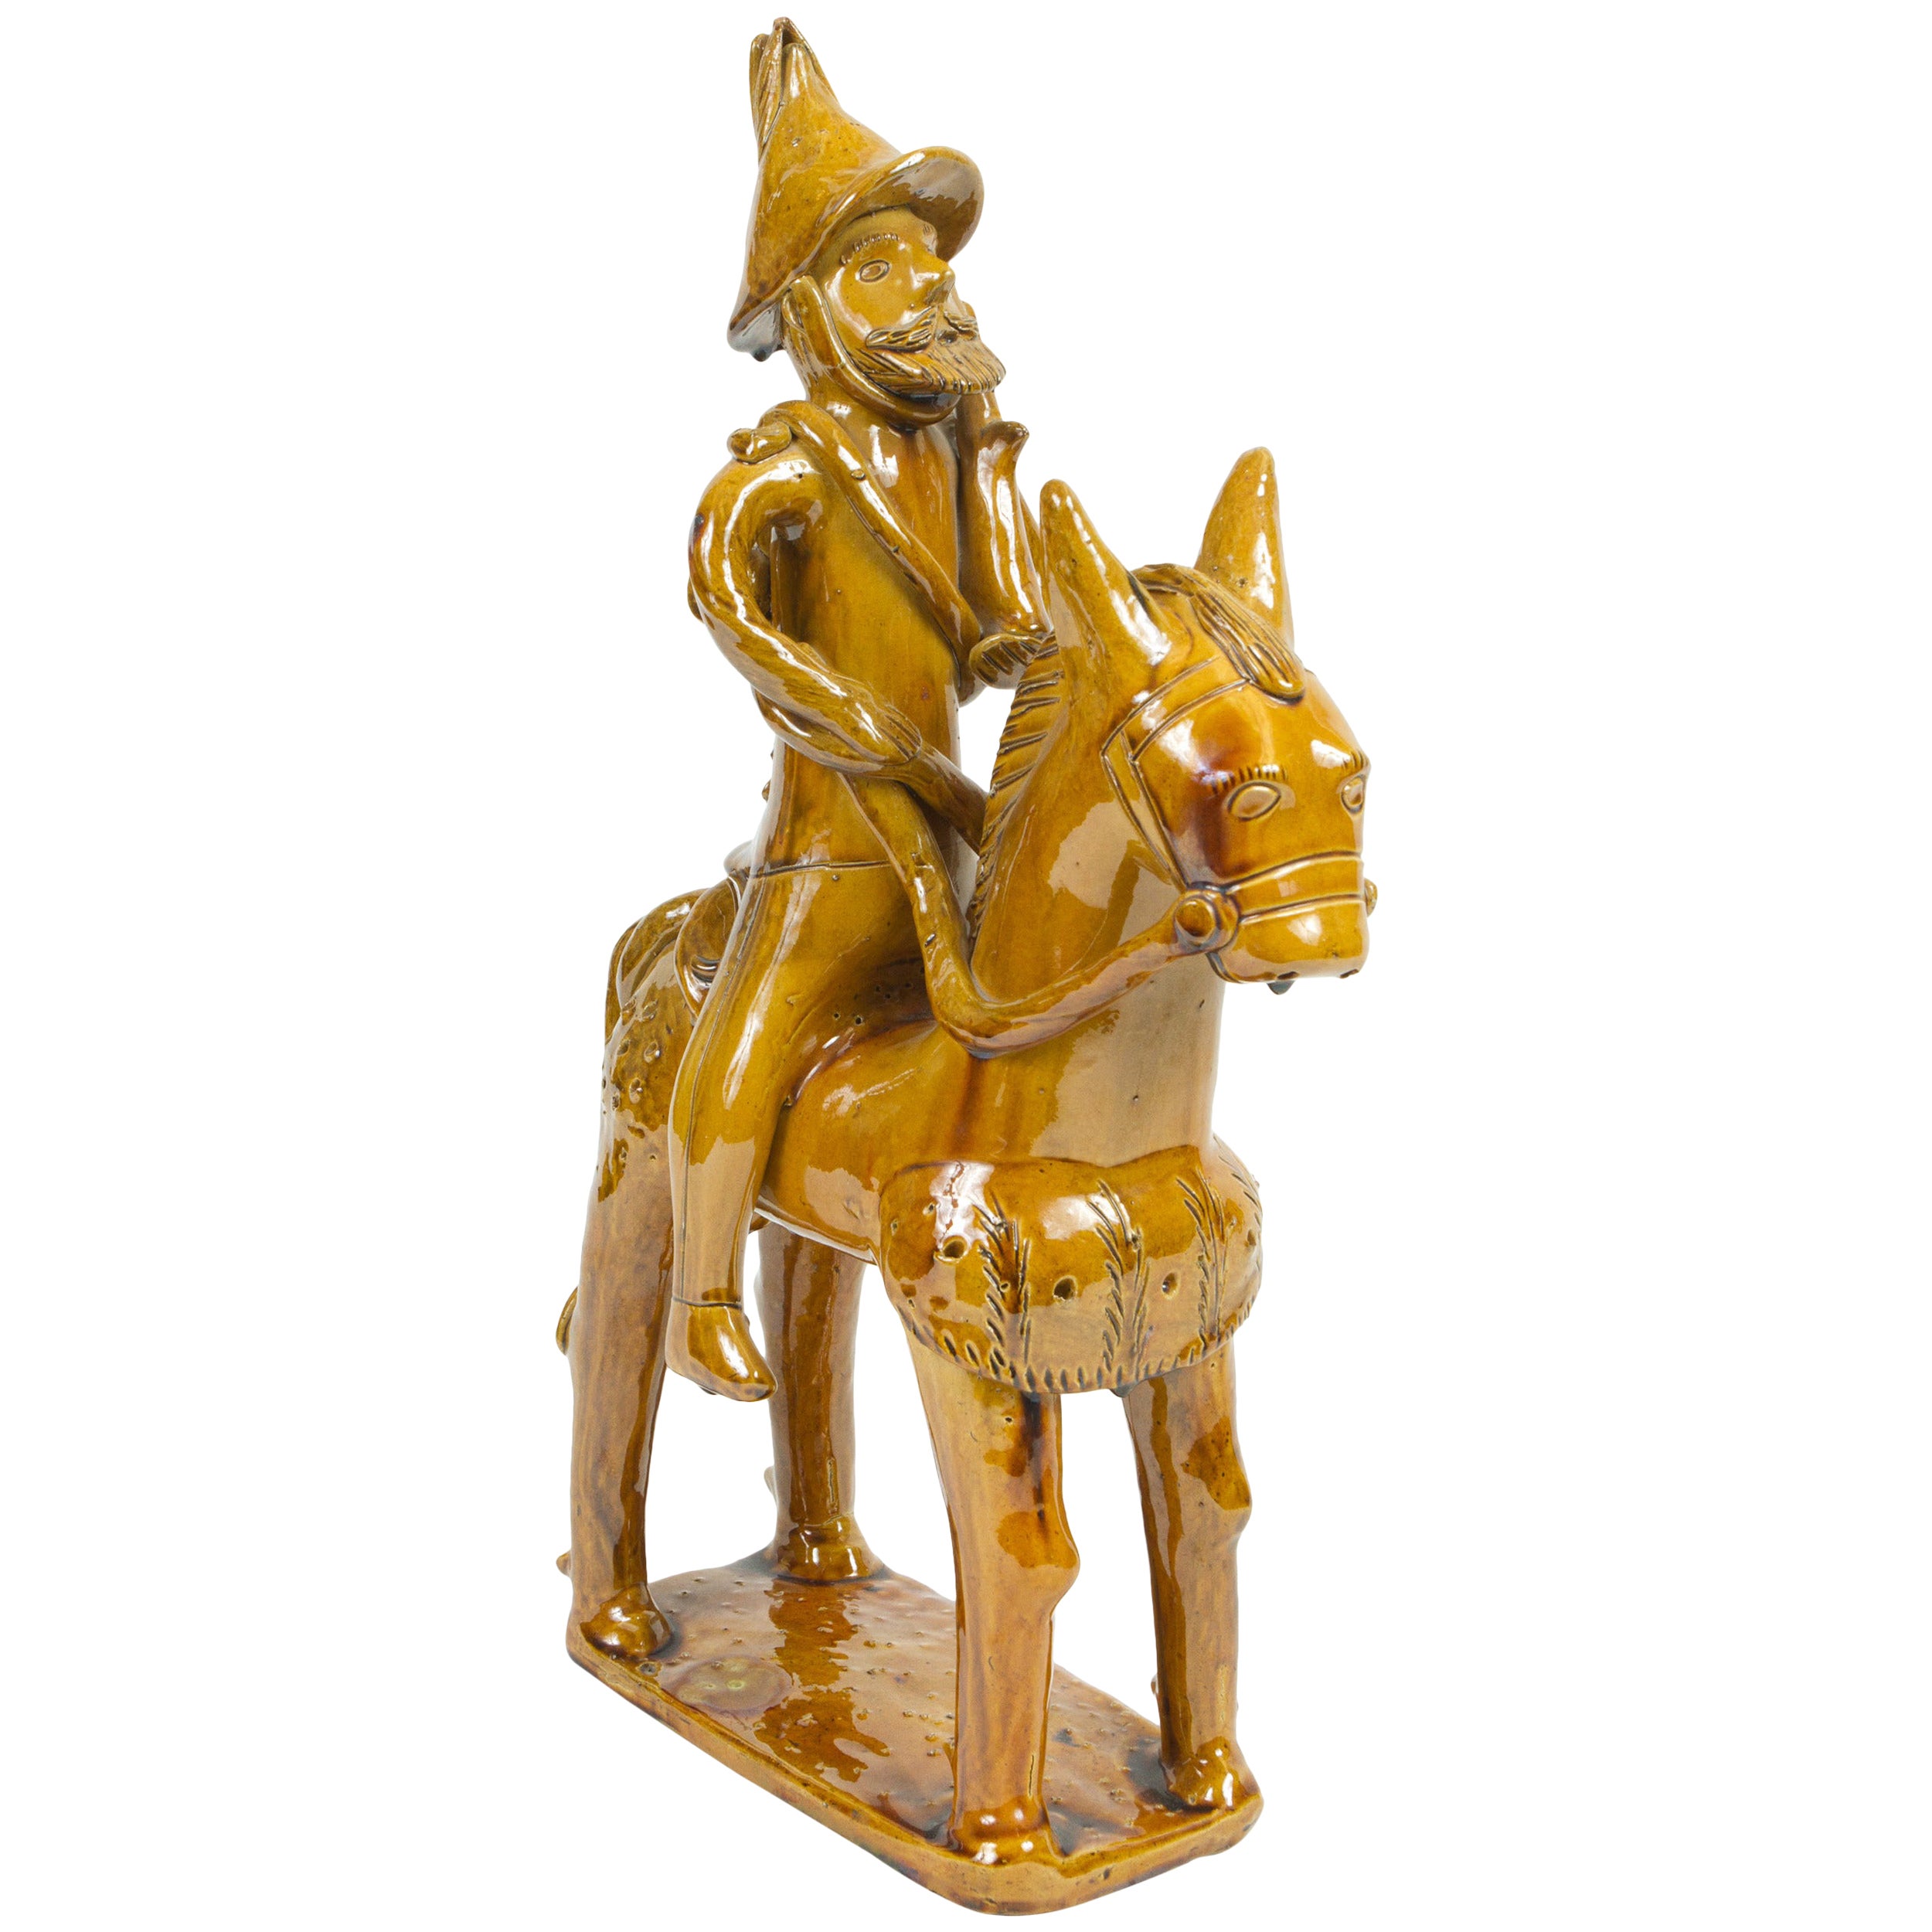 Sculpture de Don Quichotte en céramique espagnole émaillée jaune